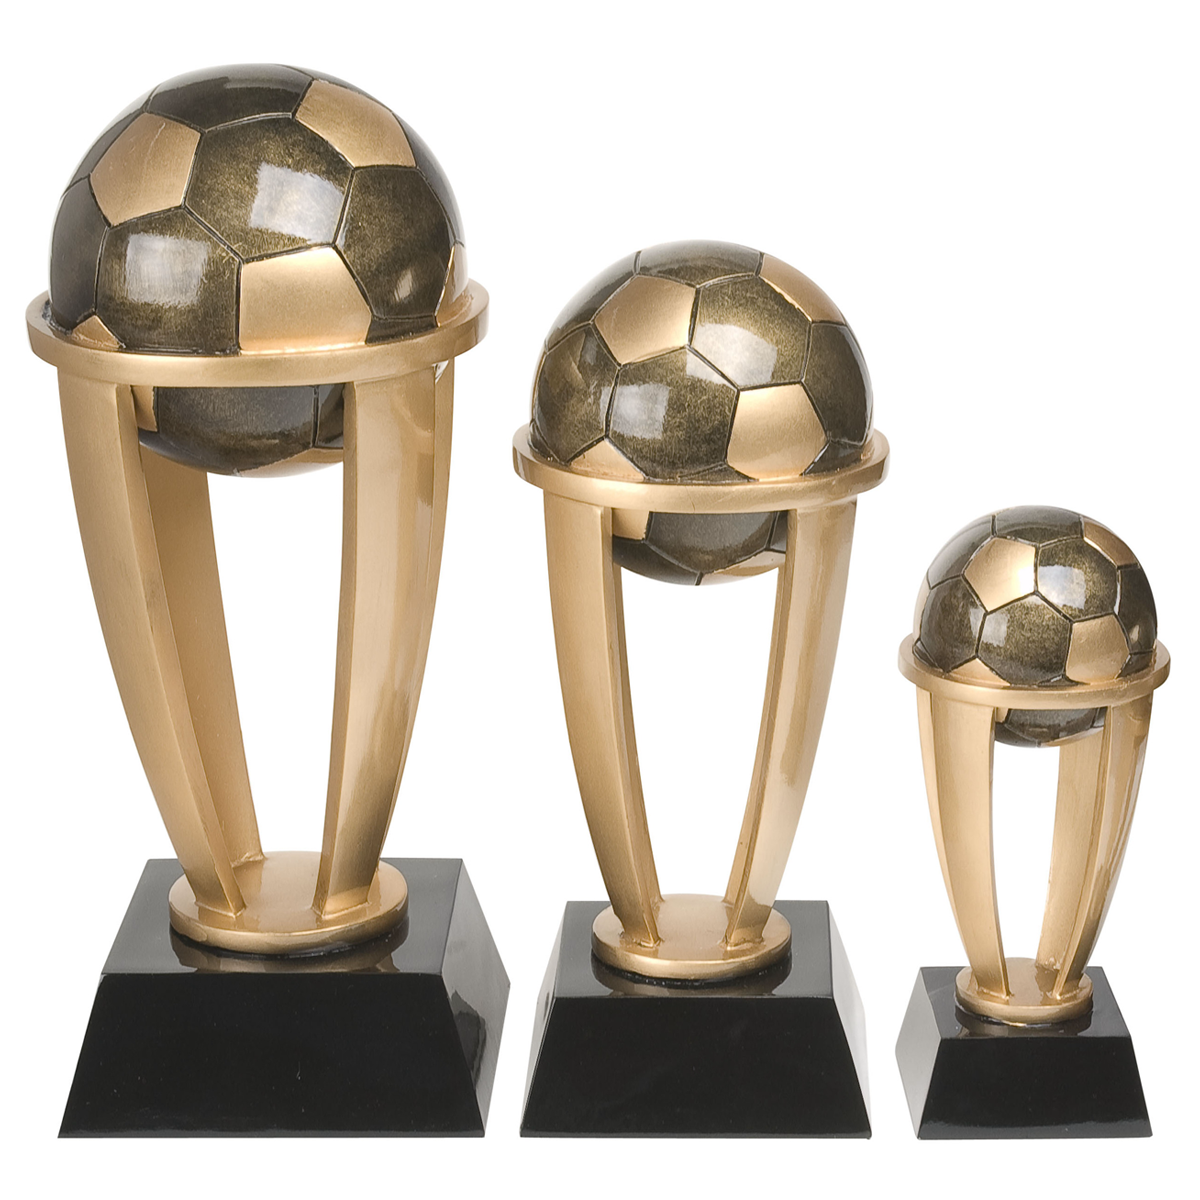 Soccer Tower Resin Award